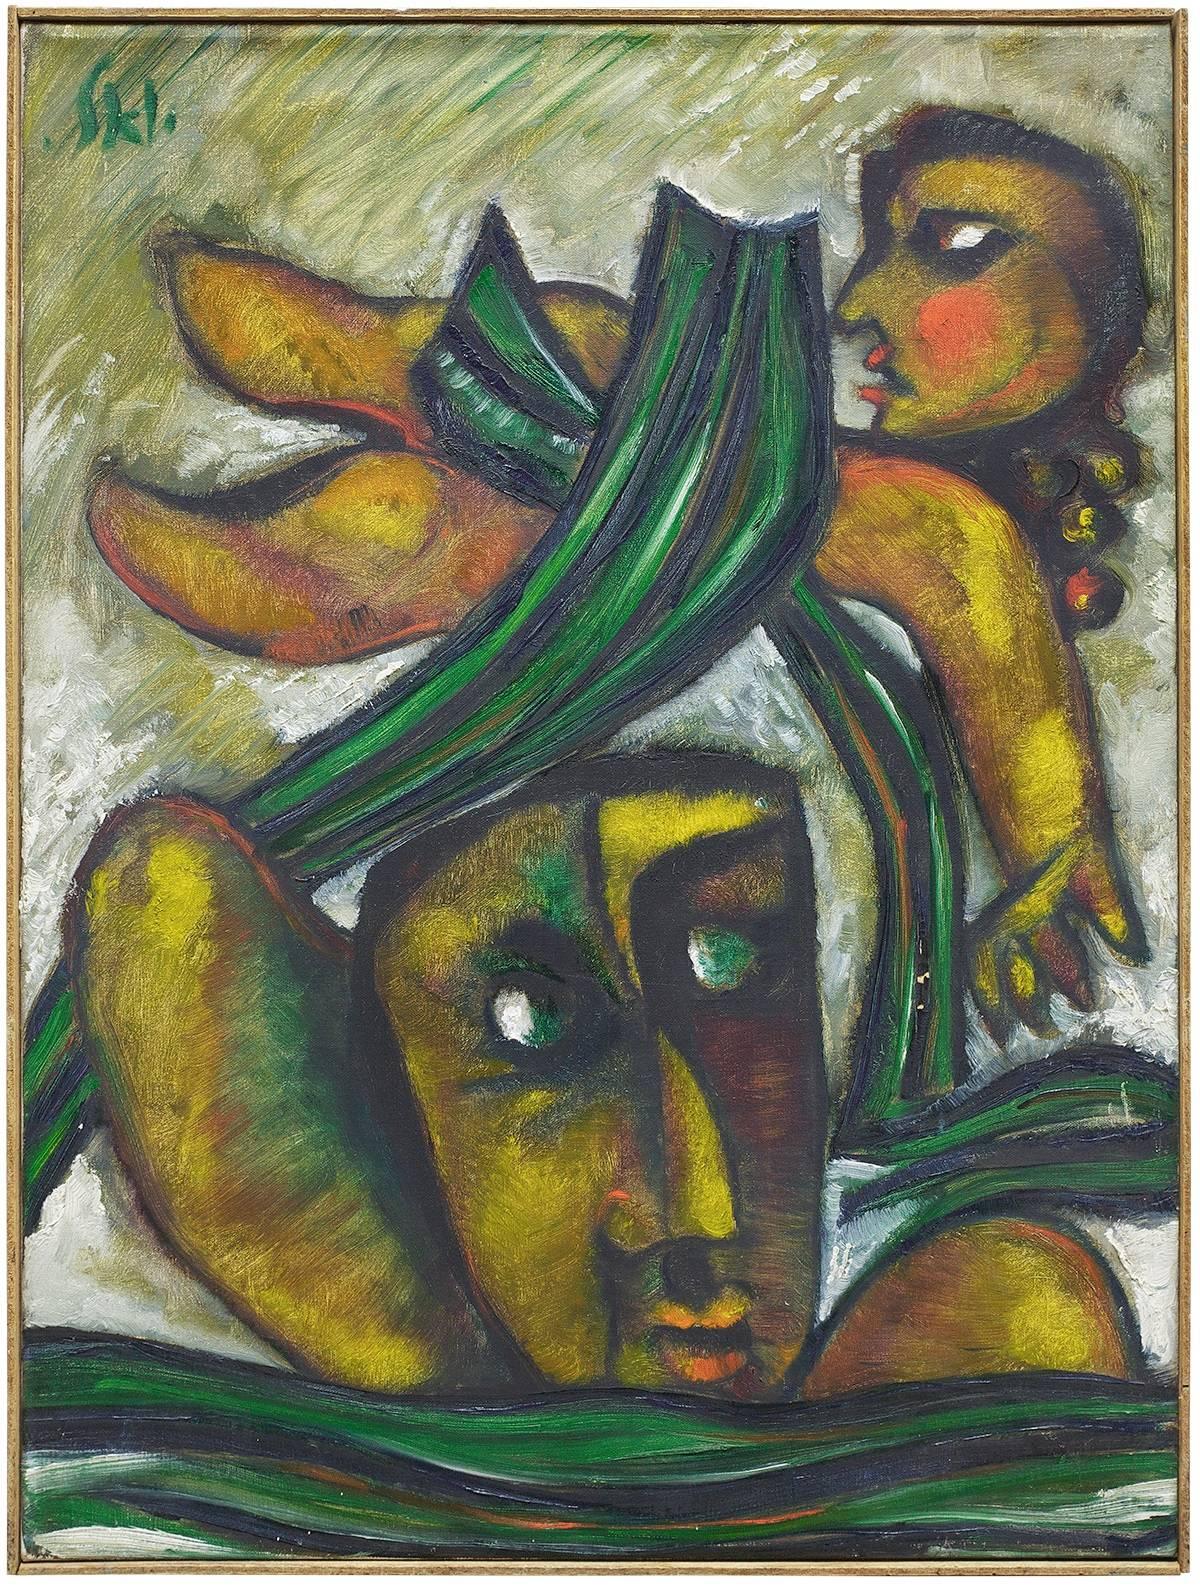 Peinture à l'huile abstraite de l'artiste expressionniste figuratif israélien de renom Joel Kass